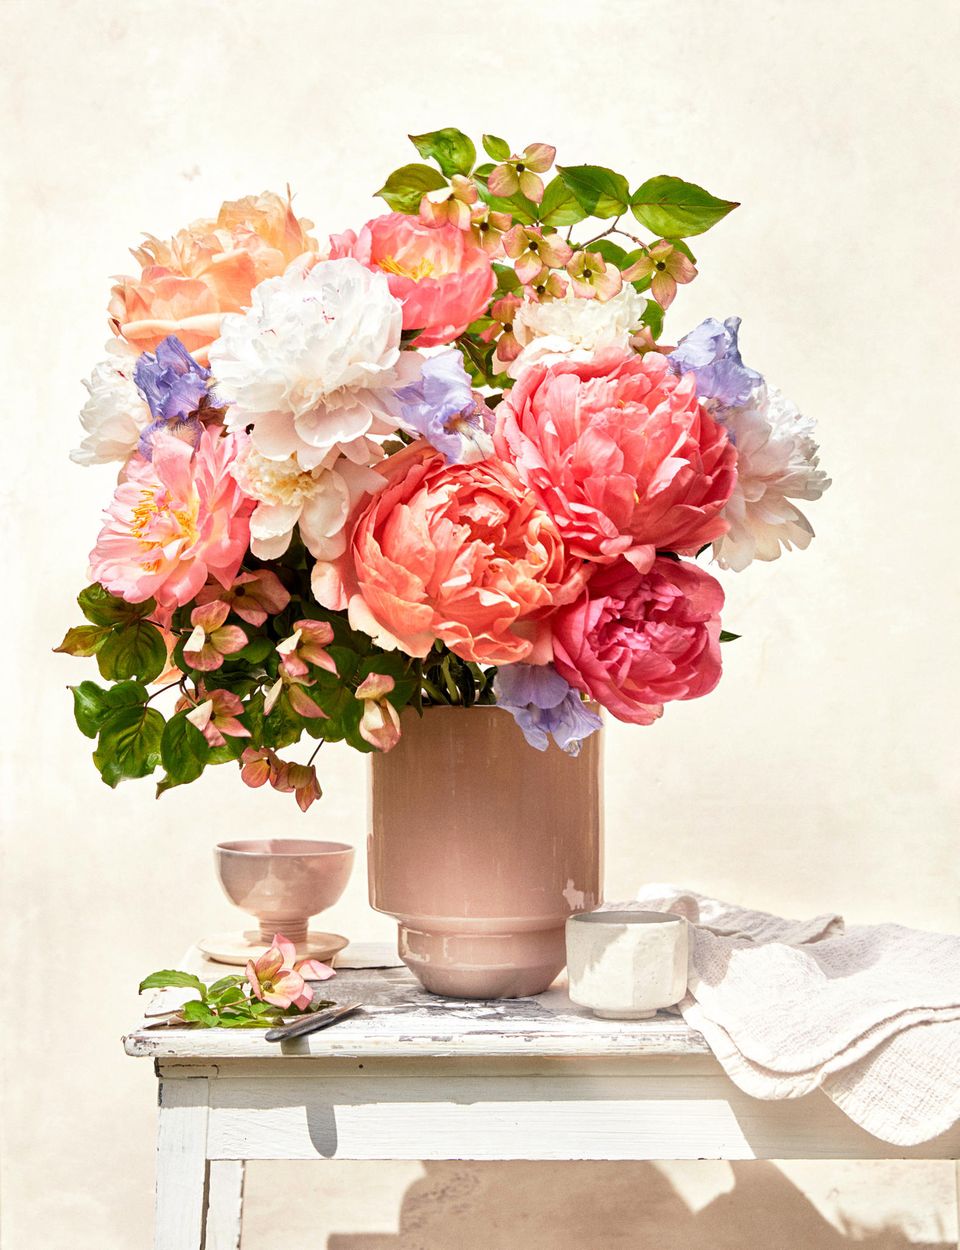 Blumenstrauß mit Pfingstrosen, Iris und Blumenhartriegel steht in einer rosa Vase auf einem Holzmöbel